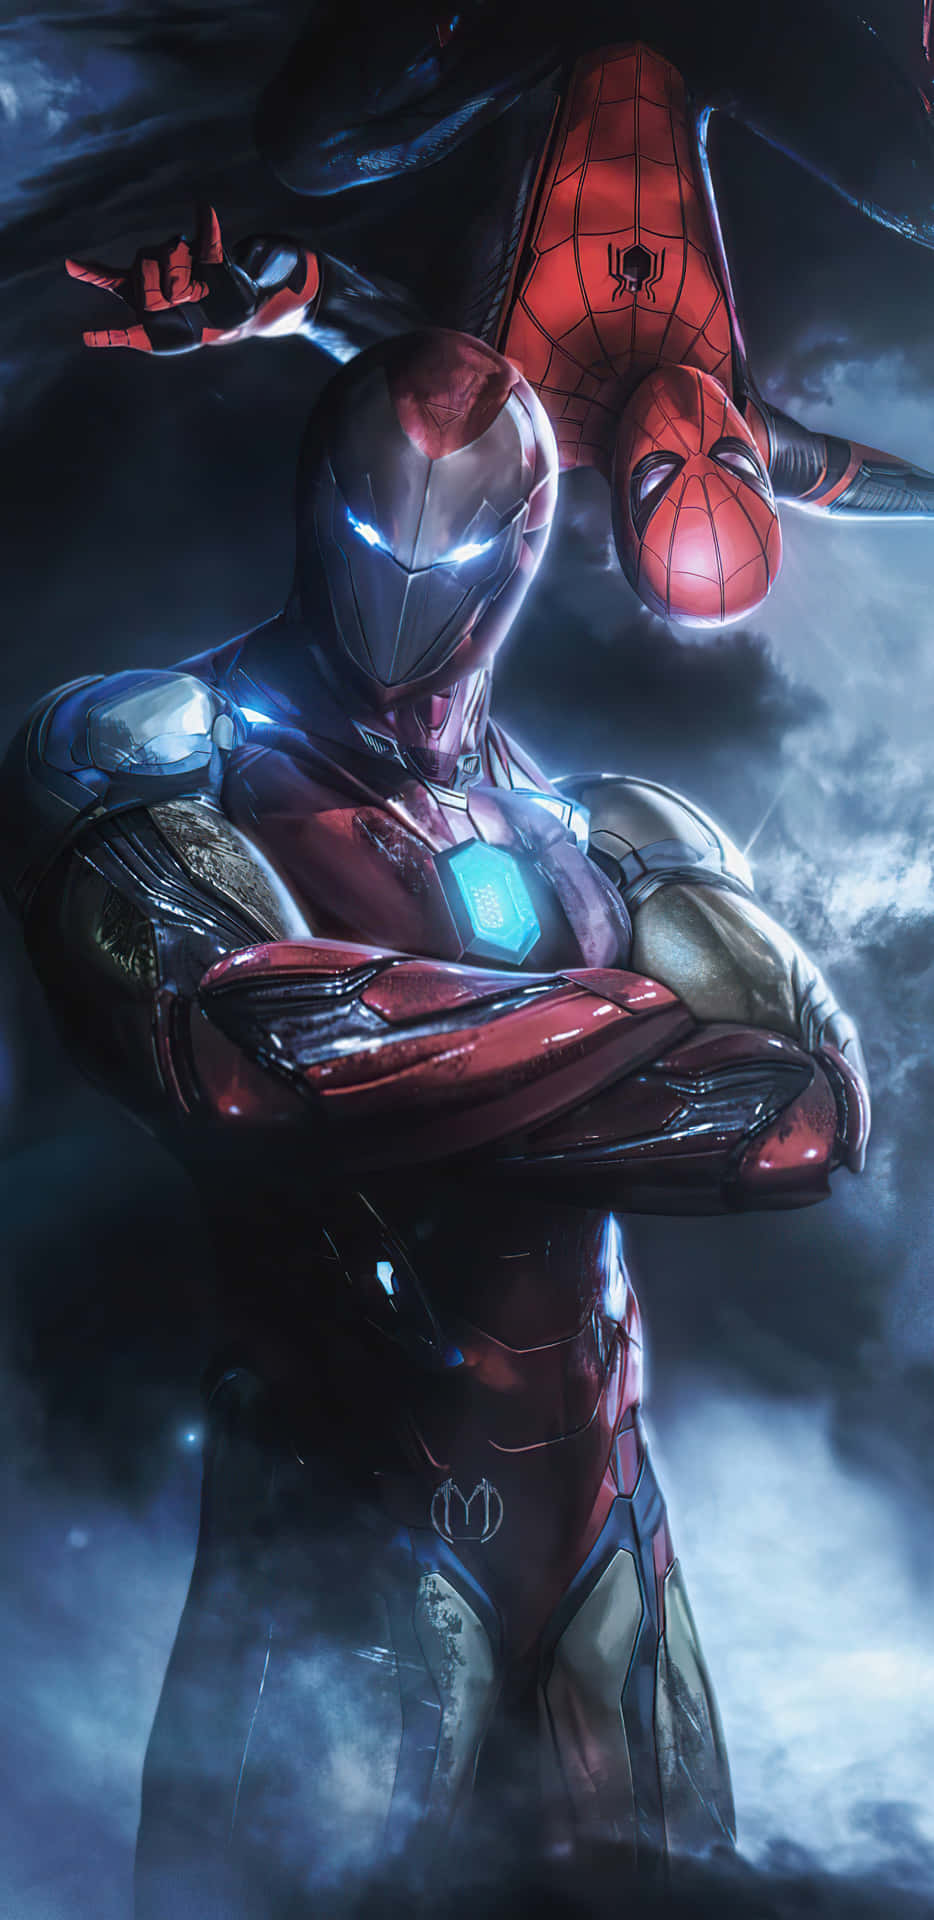 Marvel-helte Spider-Man og Iron Man forener sig i denne dramatiske tapet Wallpaper